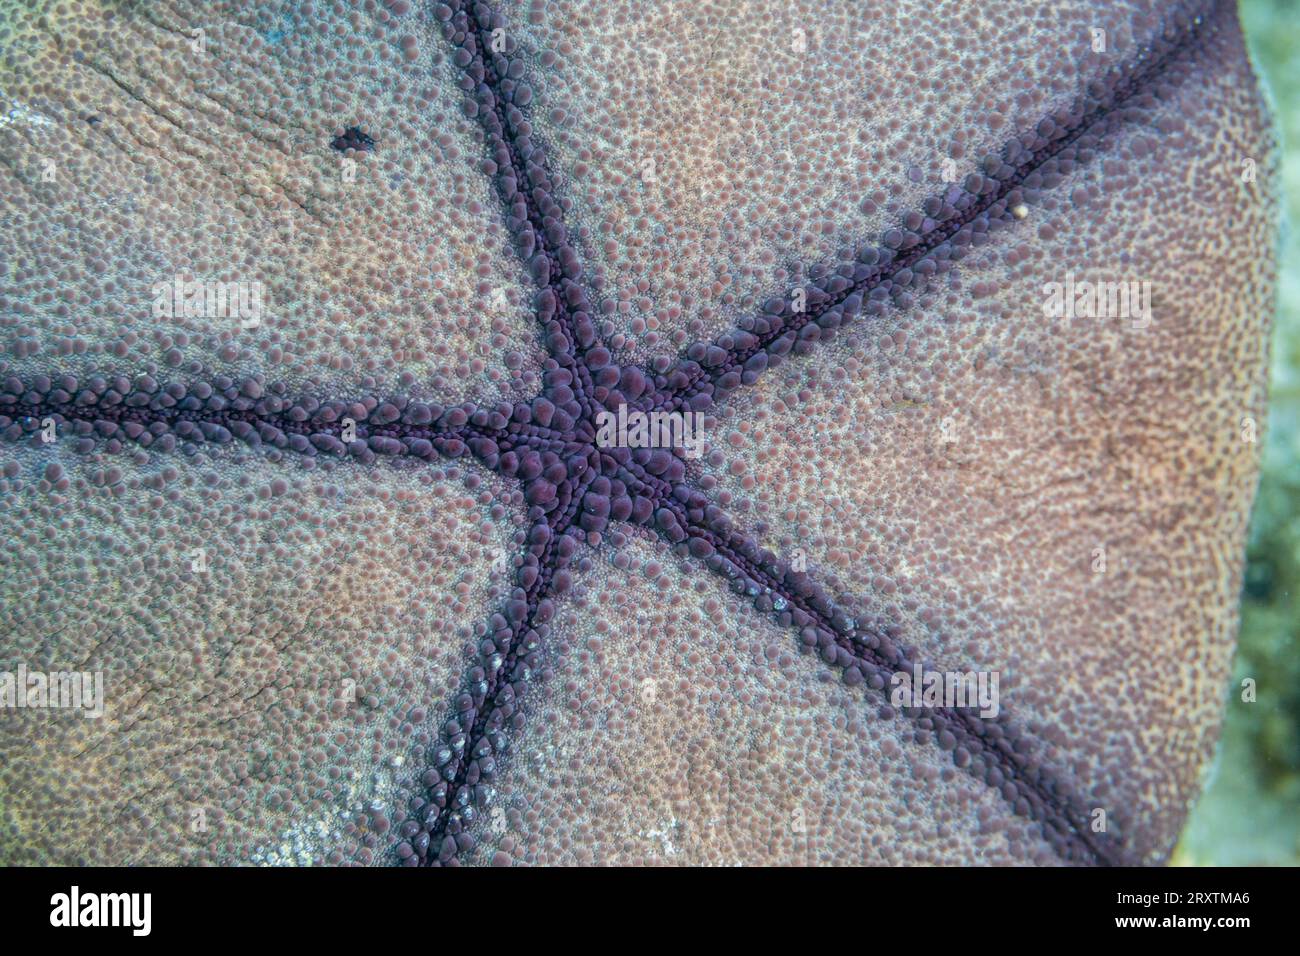 Cuscino a stella (Culcita novaeguineae), nelle macerie poco profonde al largo dell'isola di Kri, Raja Ampat, Indonesia, Sud-est asiatico, Asia Foto Stock